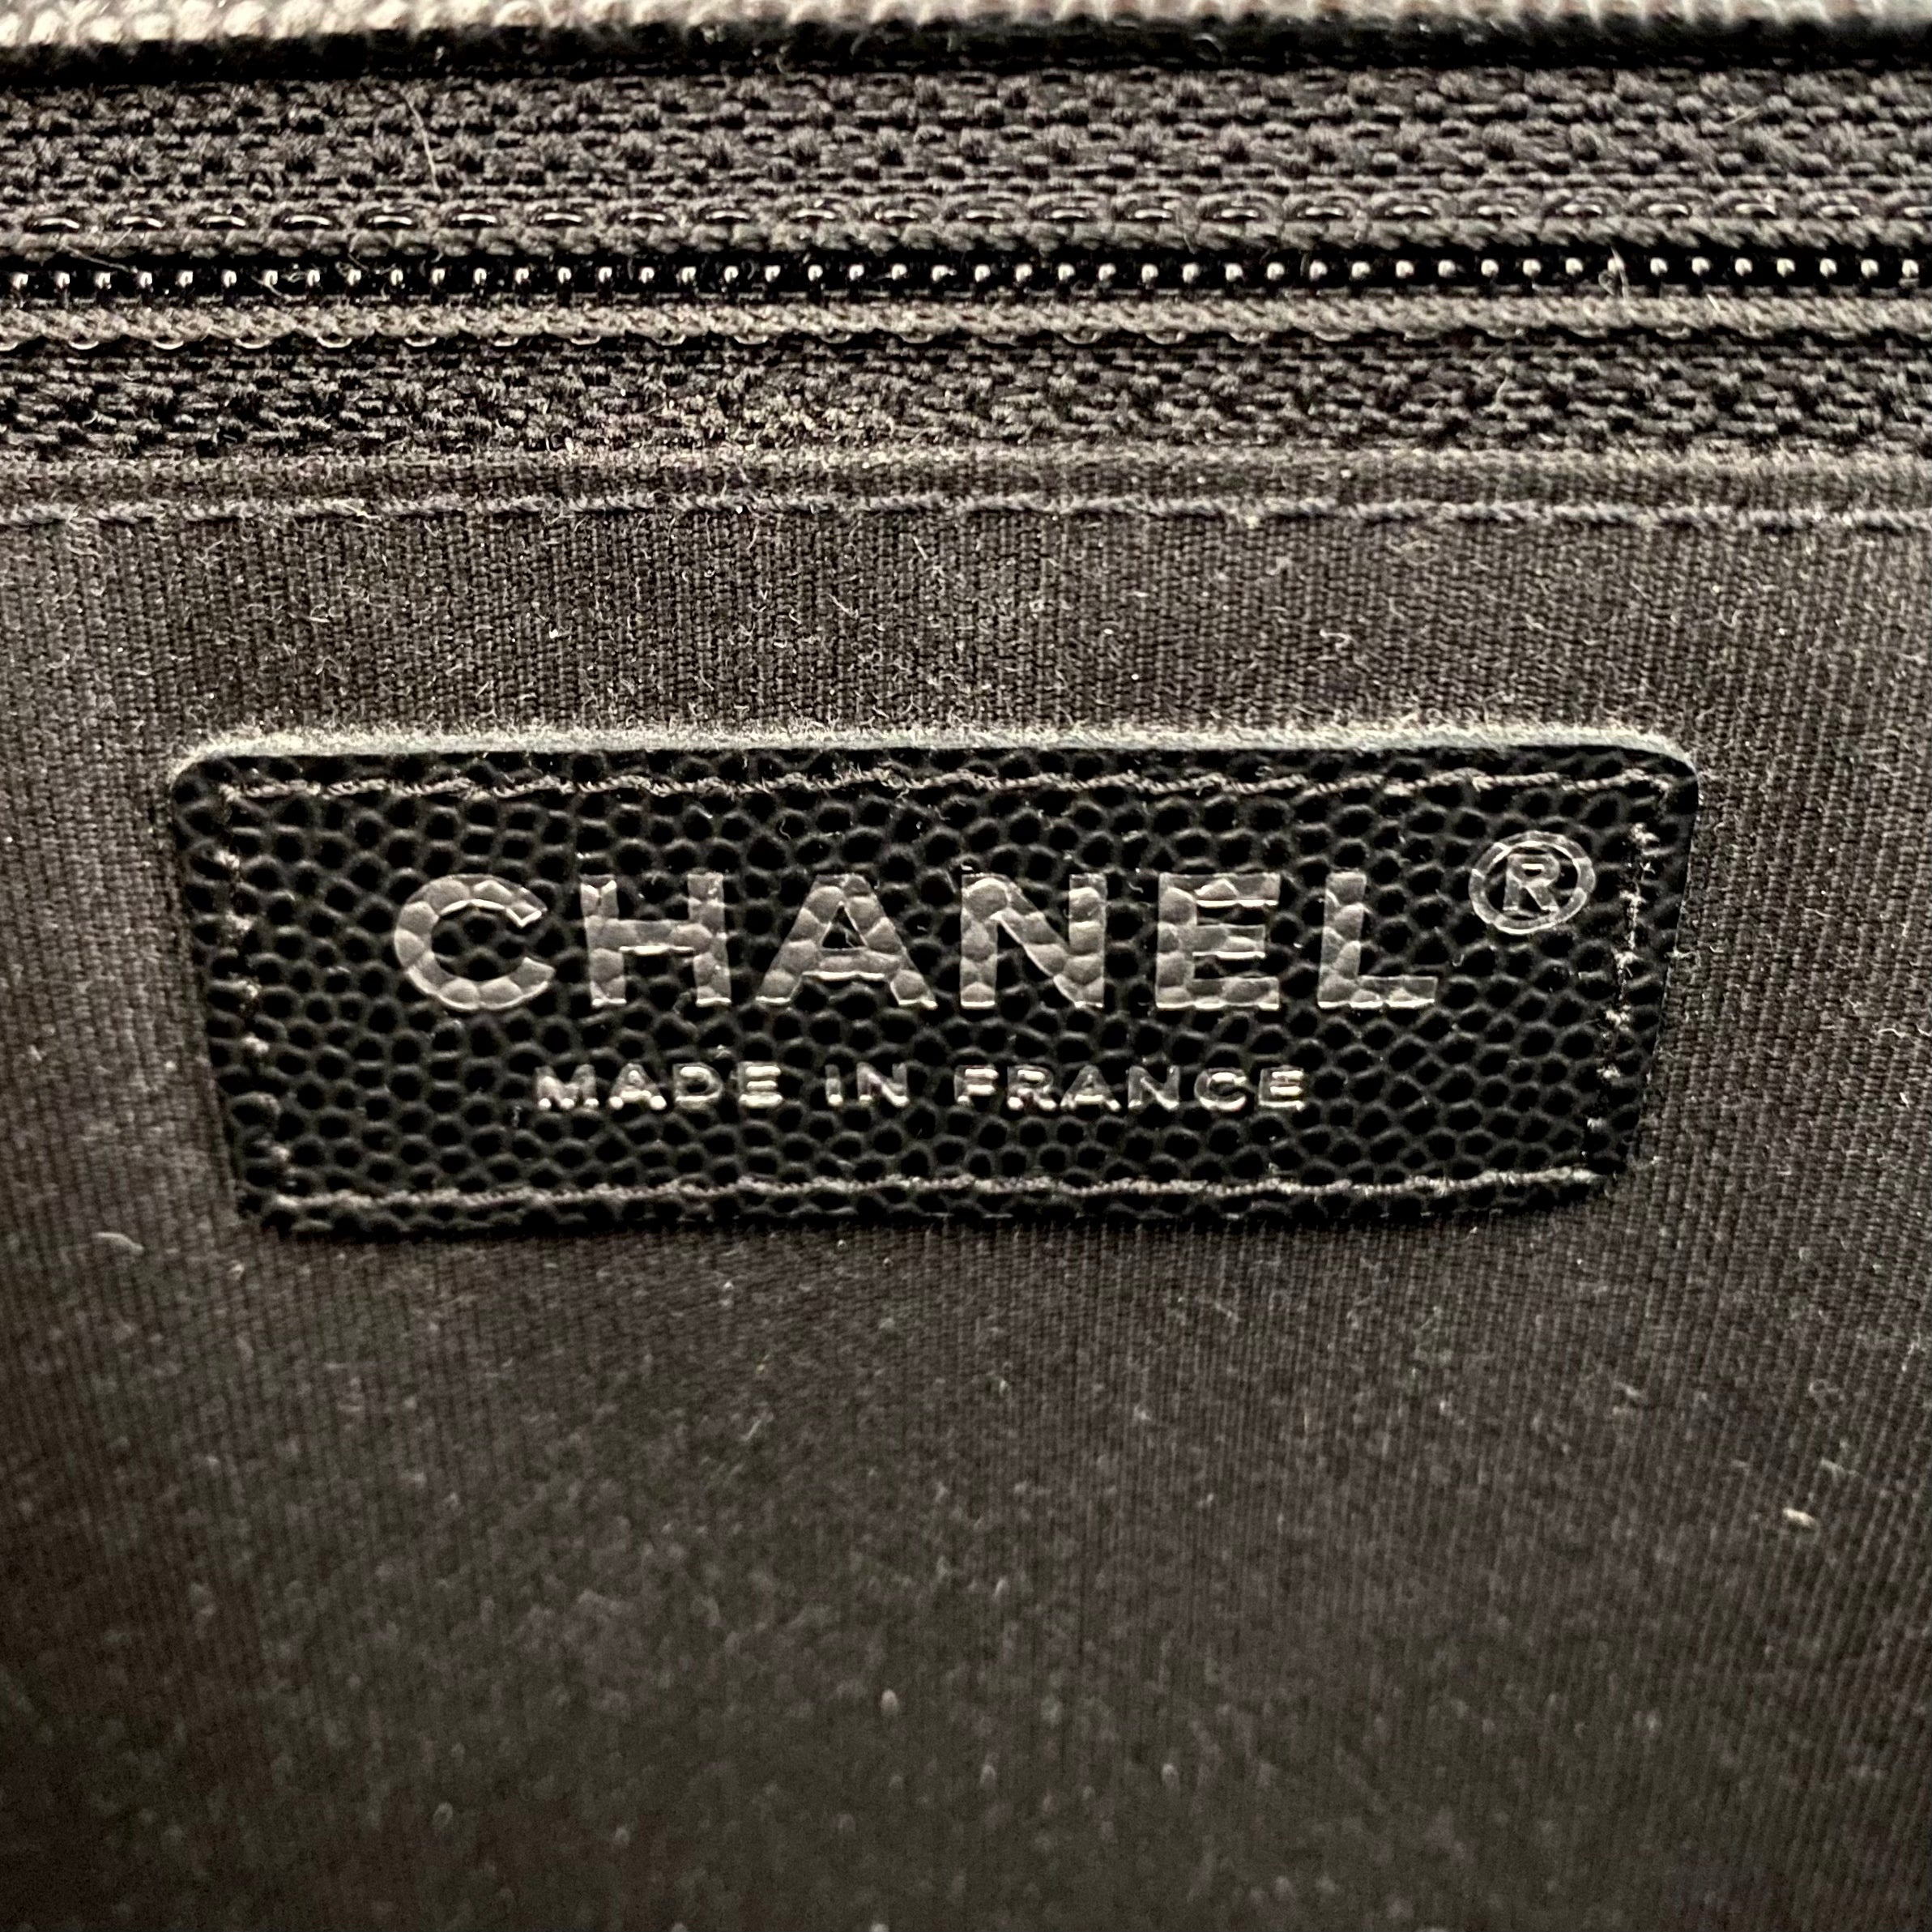 Chanel Black Boy Bag